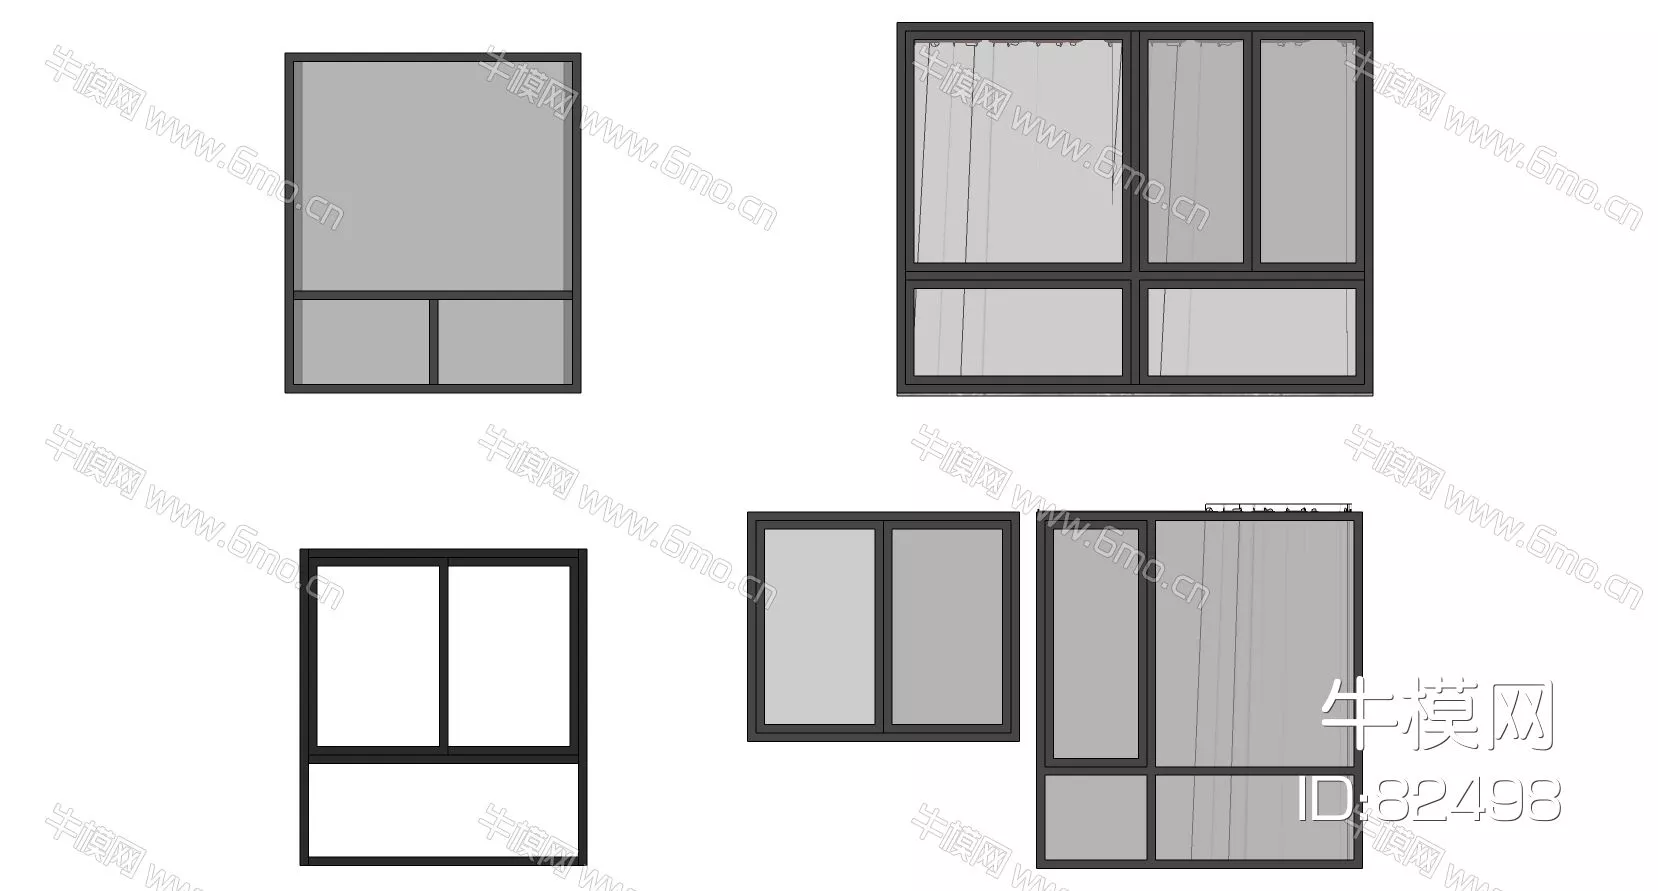 MODERN DOOR AND WINDOWS - SKETCHUP 3D MODEL - VRAY - 82498